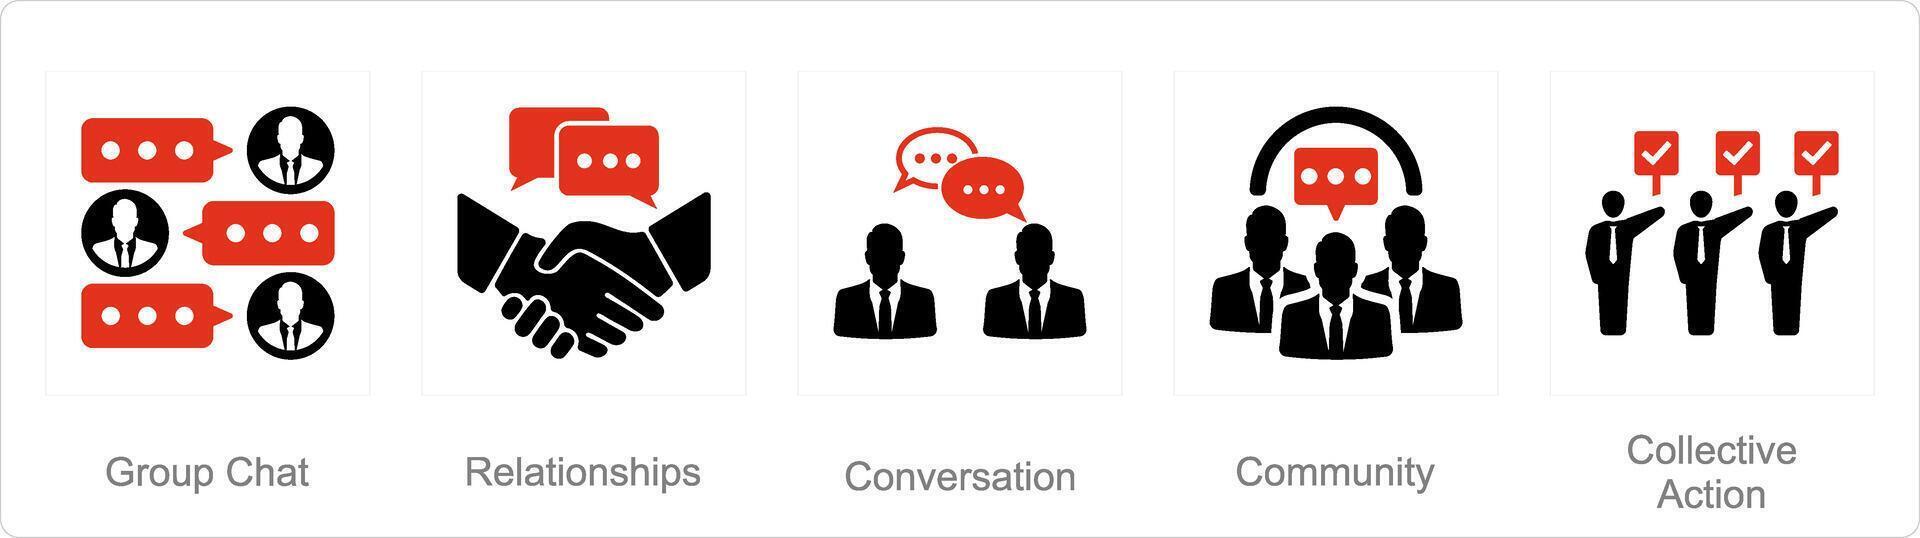 uma conjunto do 5 comunidade ícones Como grupo bater papo, relacionamentos, conversação vetor